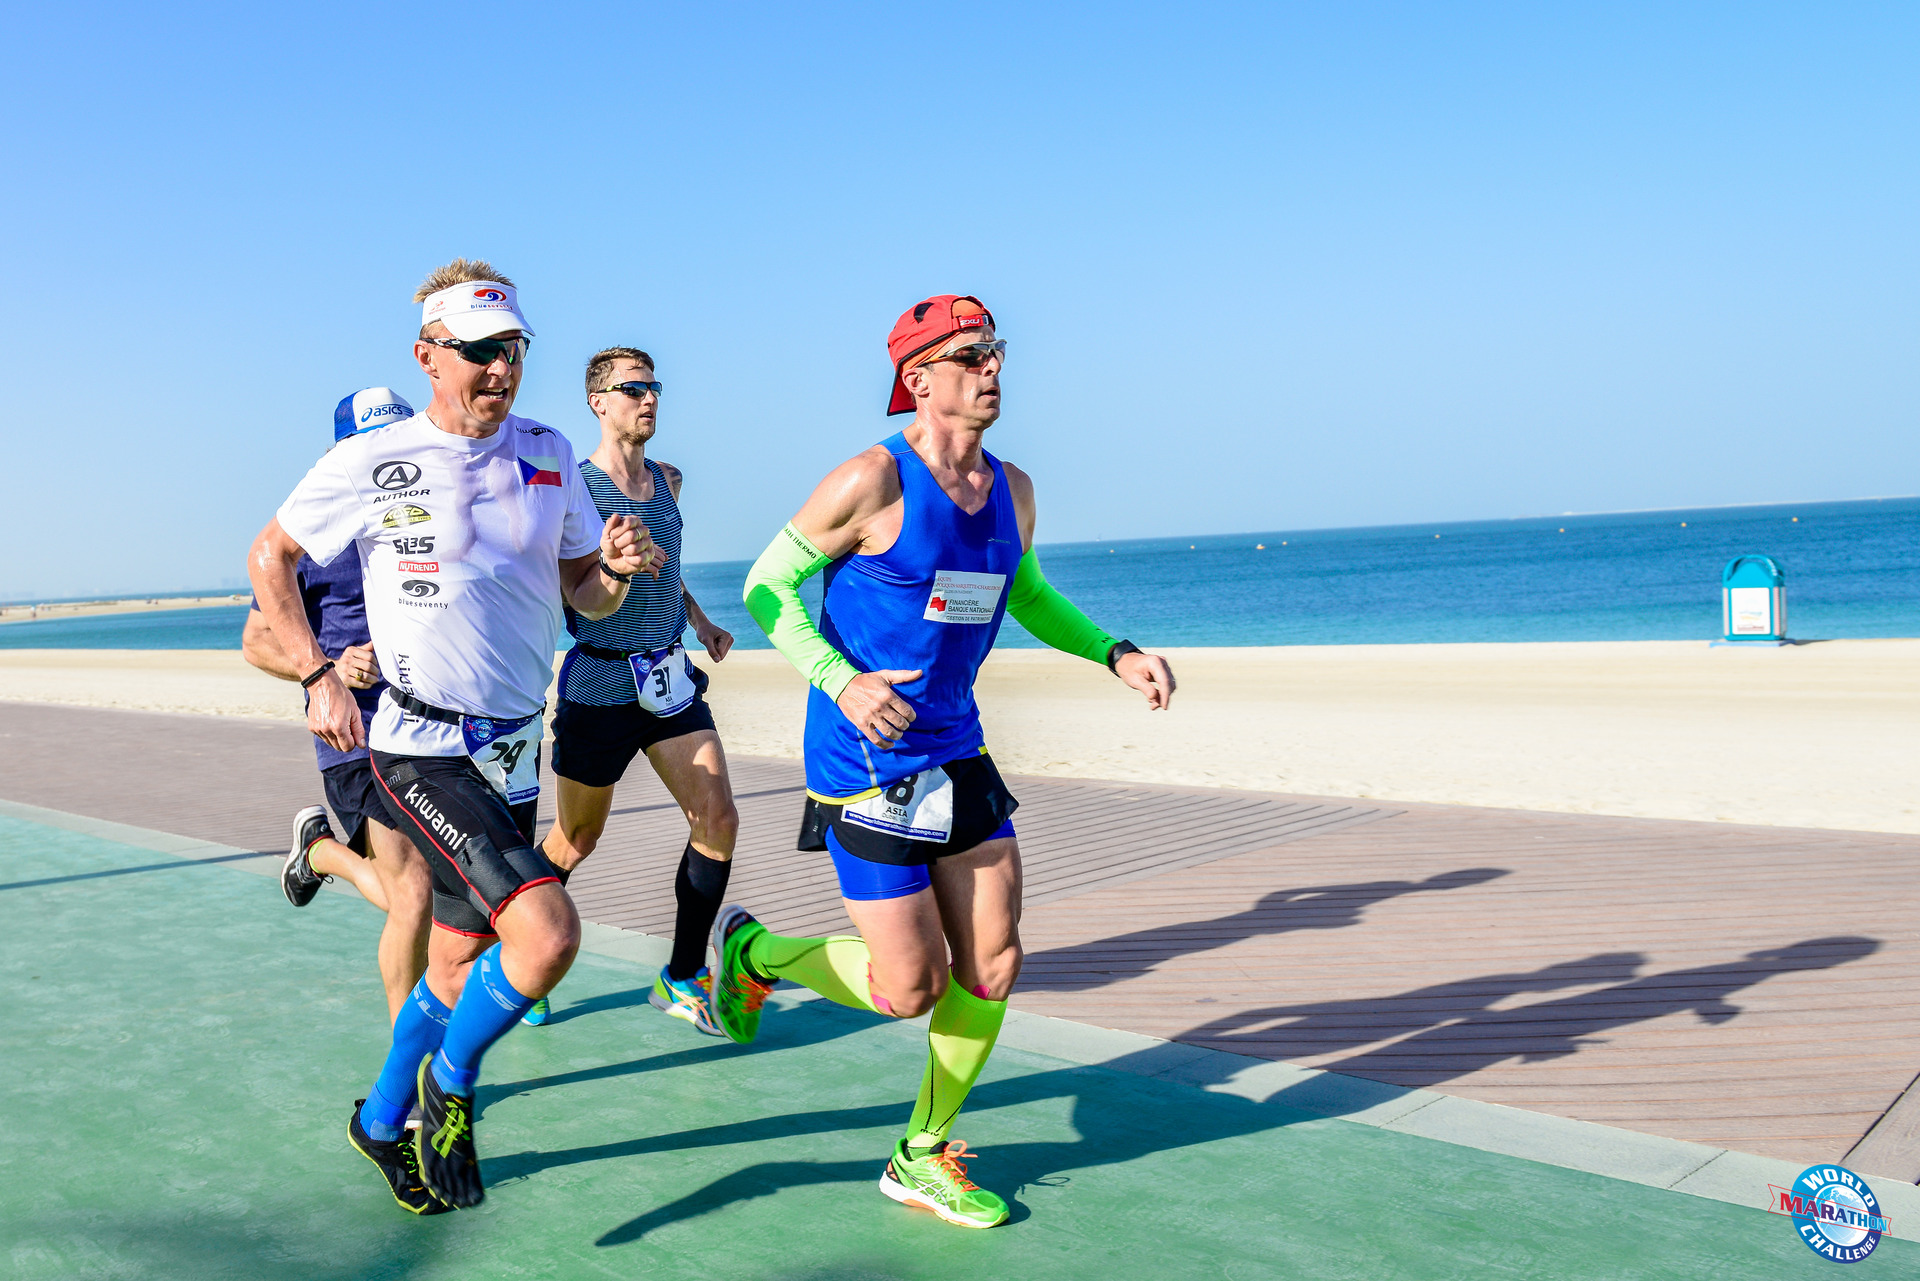 Maraton v Dubaji běžel Petr Vabroušek ve Fivefingers, modelu V-RUN (jak lze vidět na obrázku)